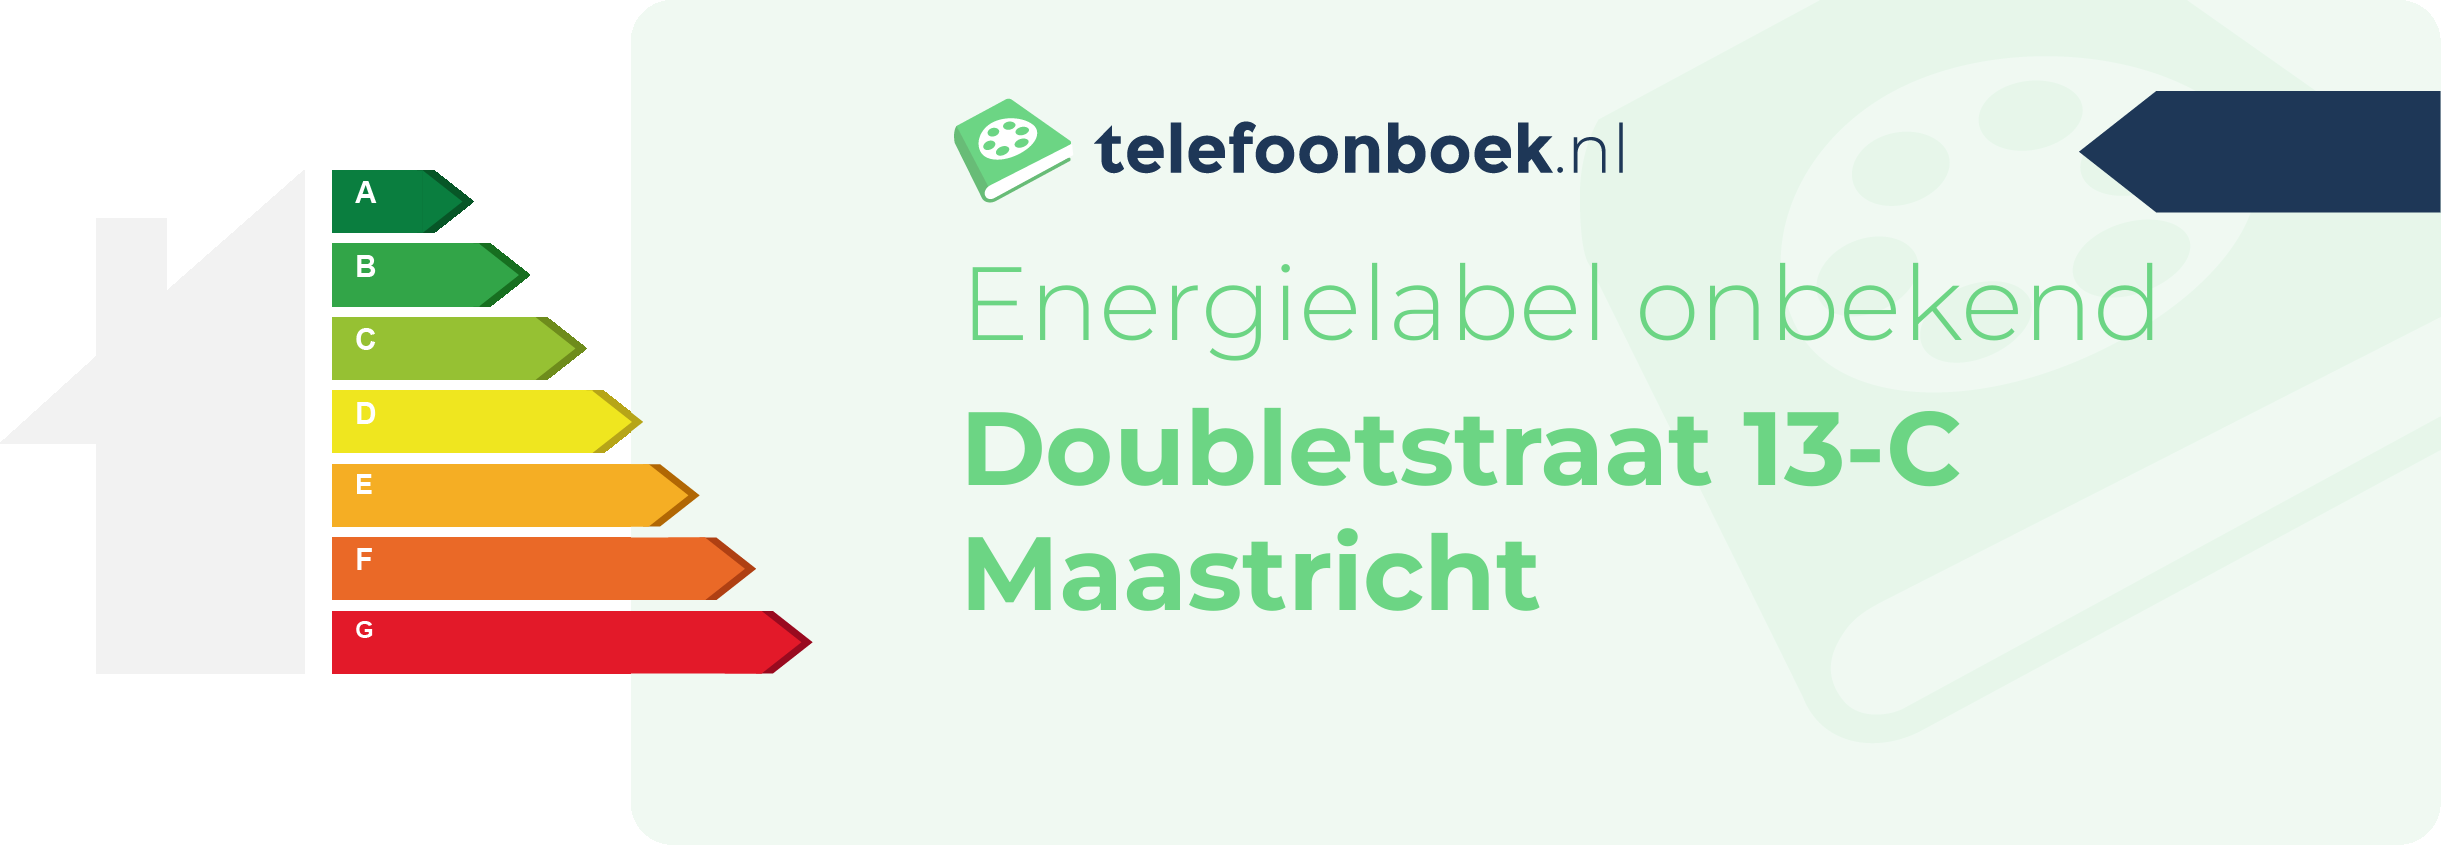 Energielabel Doubletstraat 13-C Maastricht